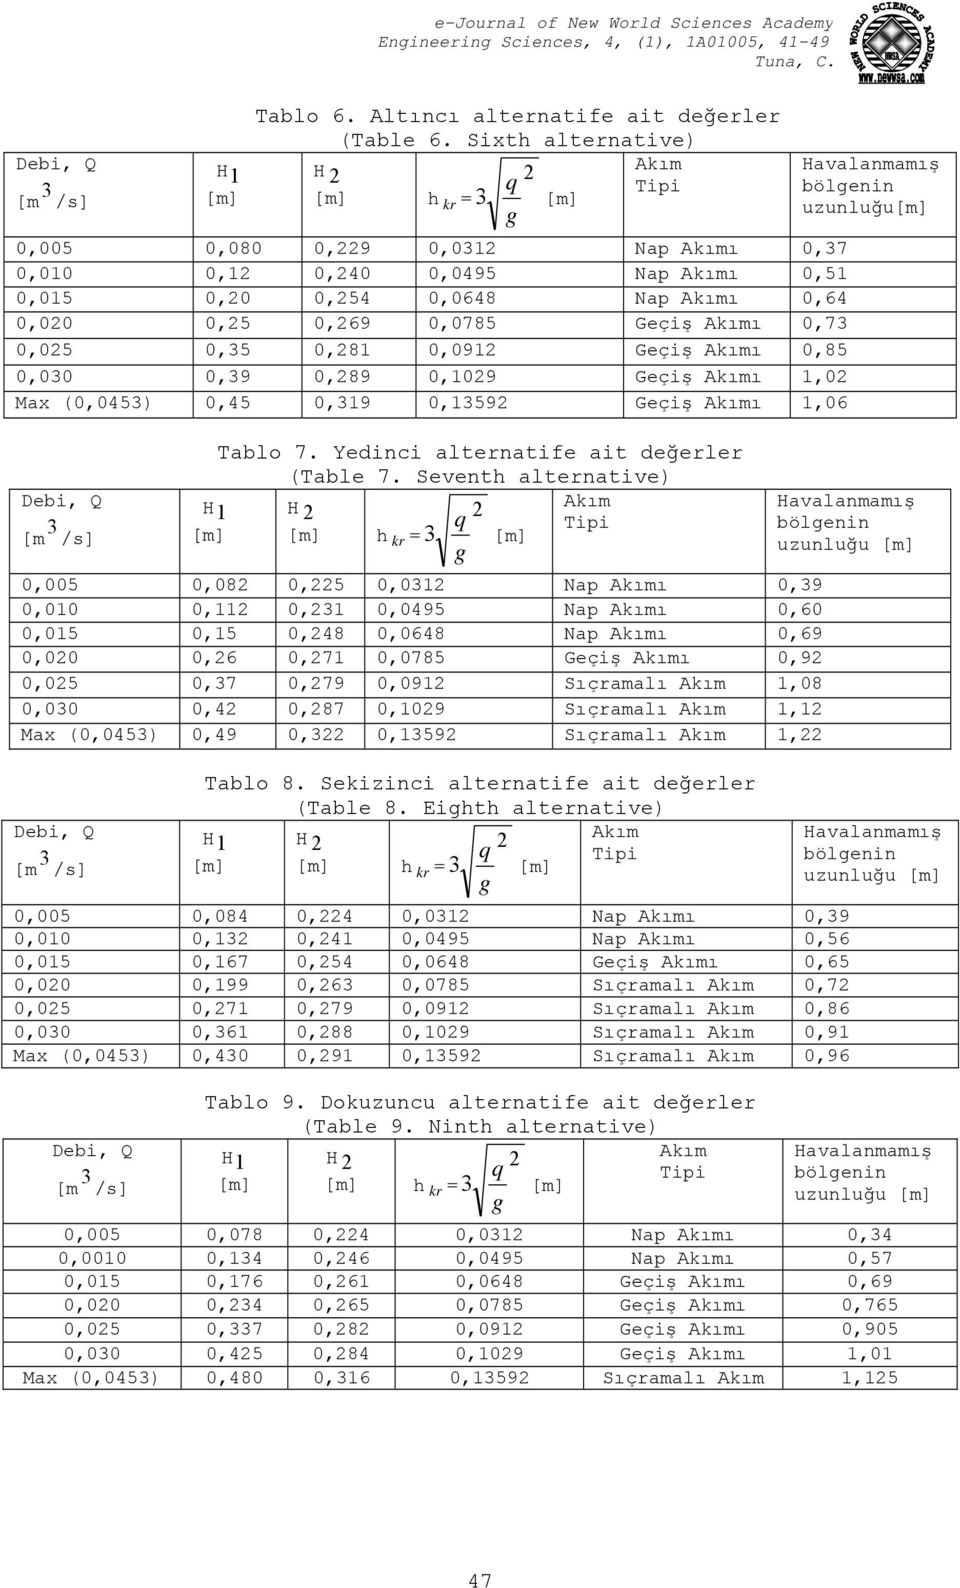 ı 0,85 0,030 0,39 0,89 0,109 Geçiş ı 1,0 Max (0,0453) 0,45 0,319 0,1359 Geçiş ı 1,06 Tablo 7. Yedinci alternatife ait değerler (Table 7.